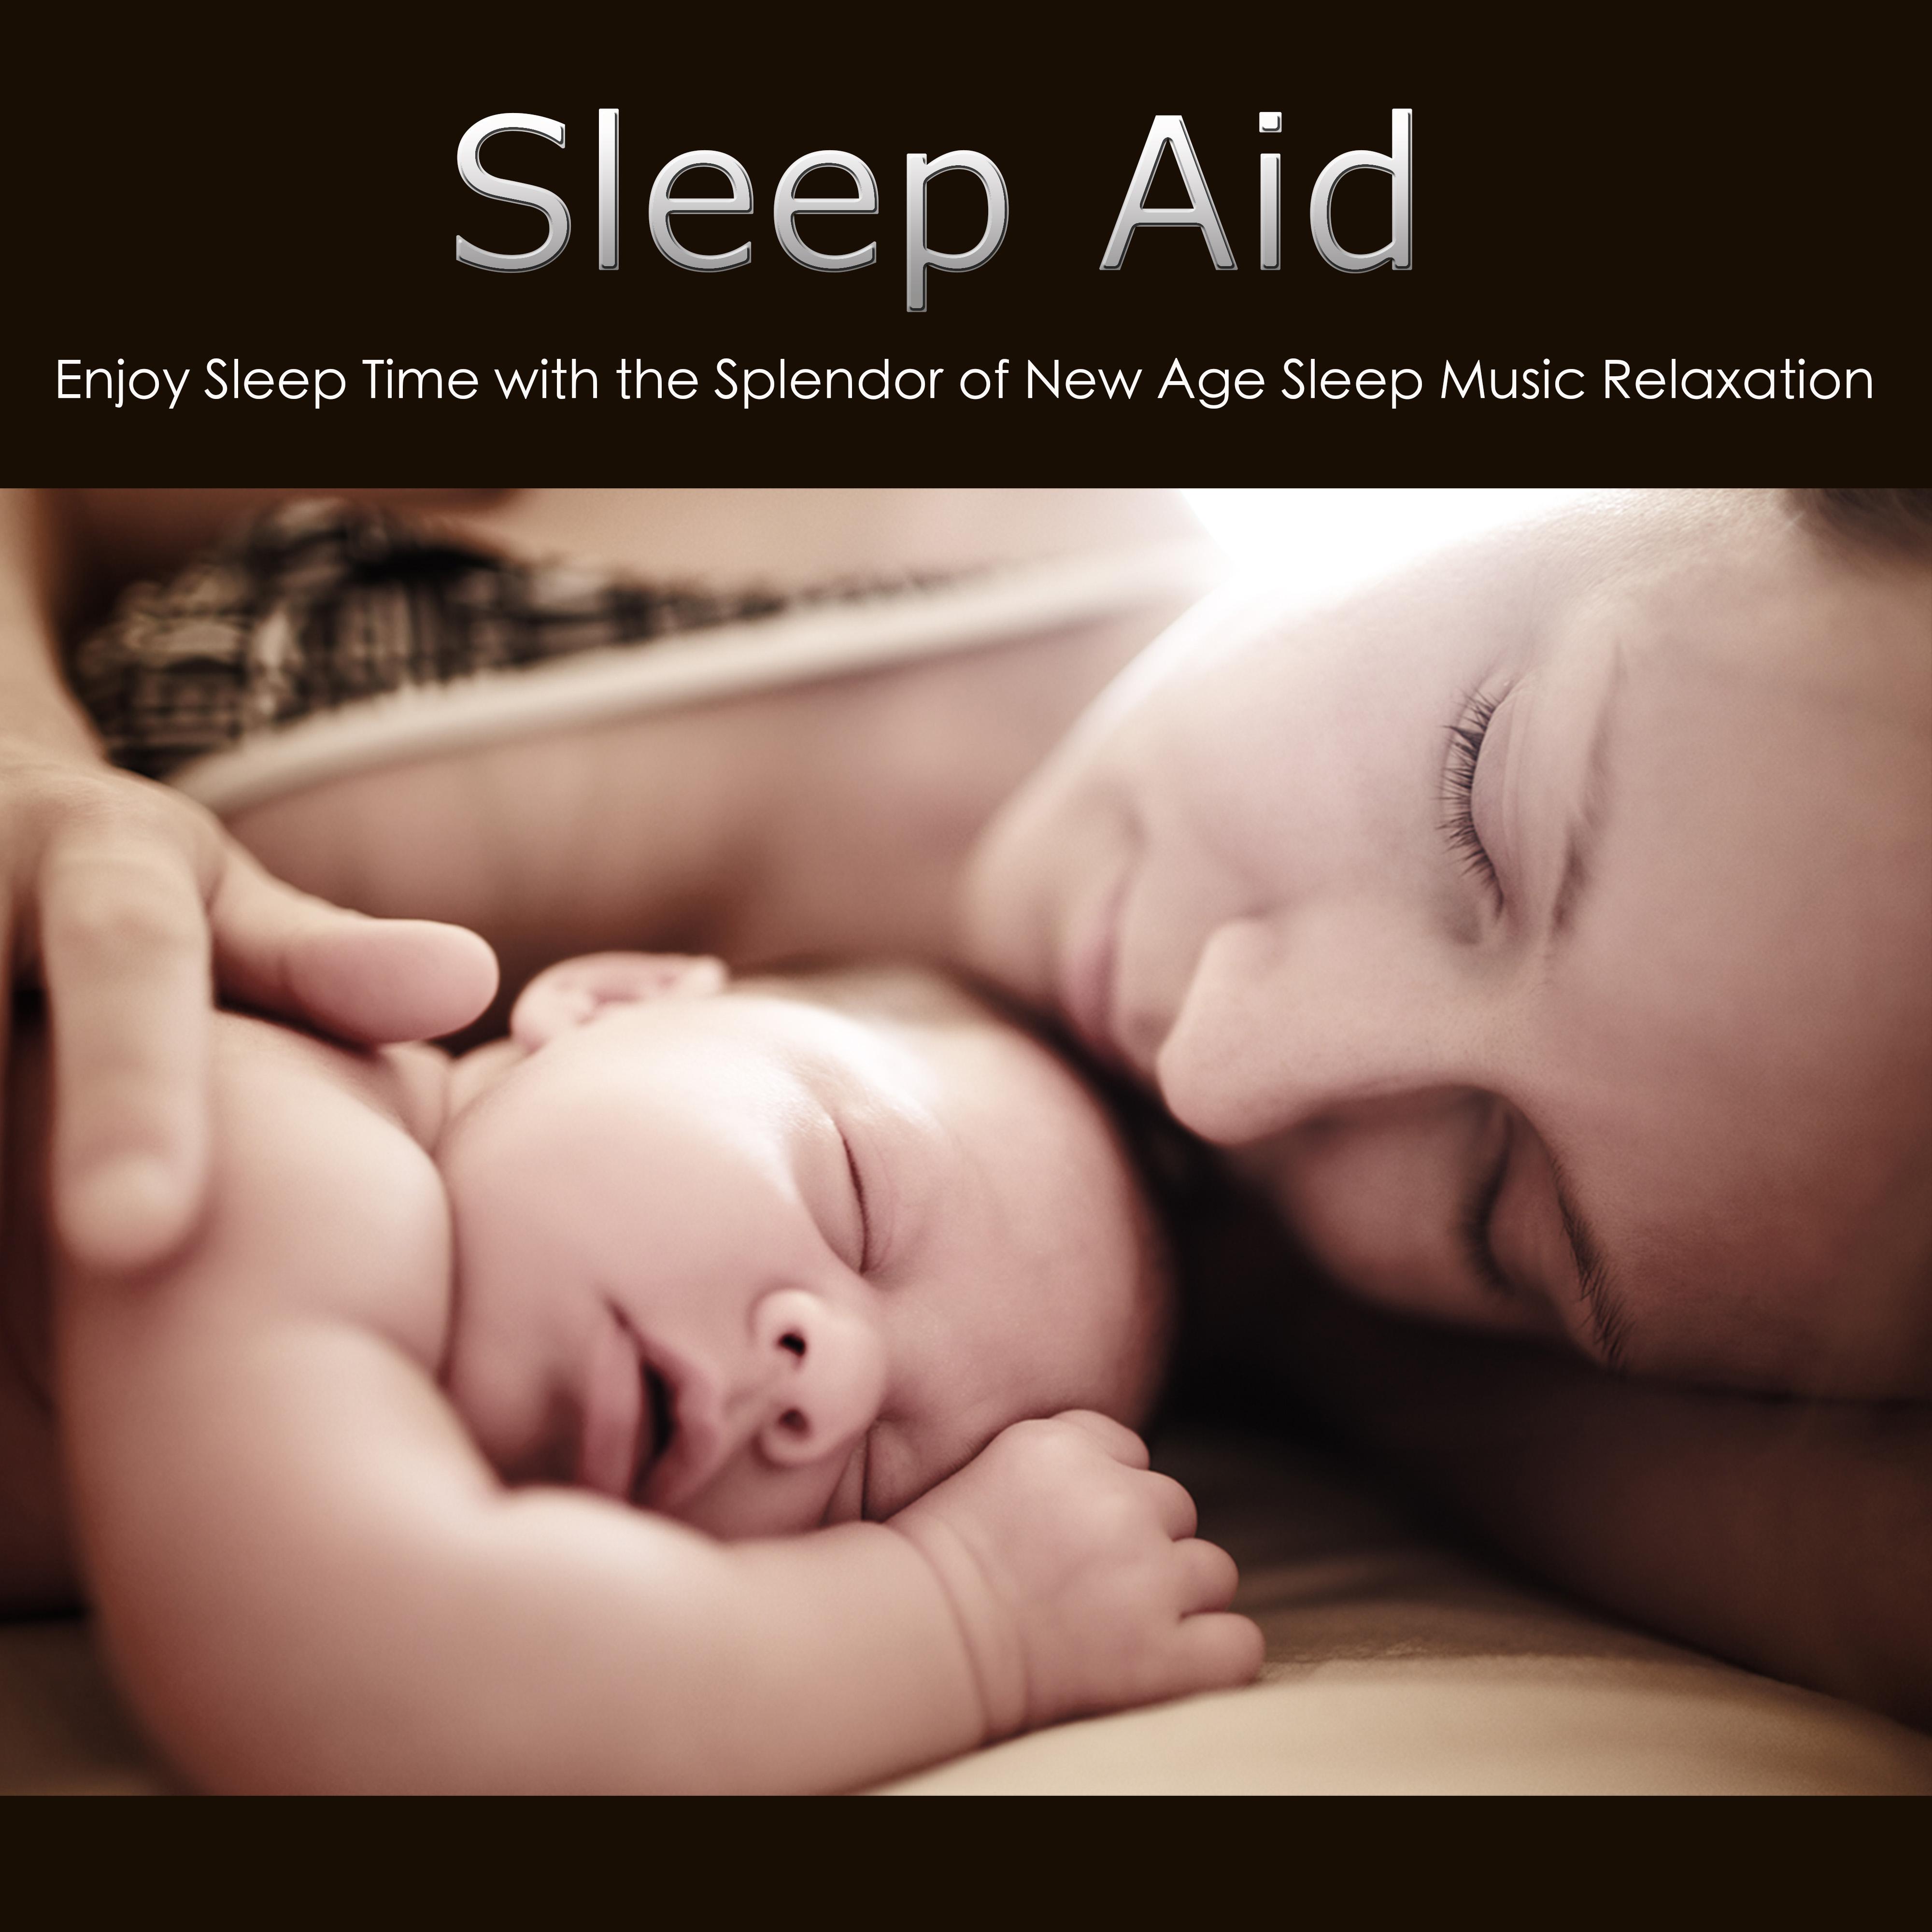 Sleep Aid: Enjoy Sleep Time with the Splendor of New Age Sleep Music Relaxation